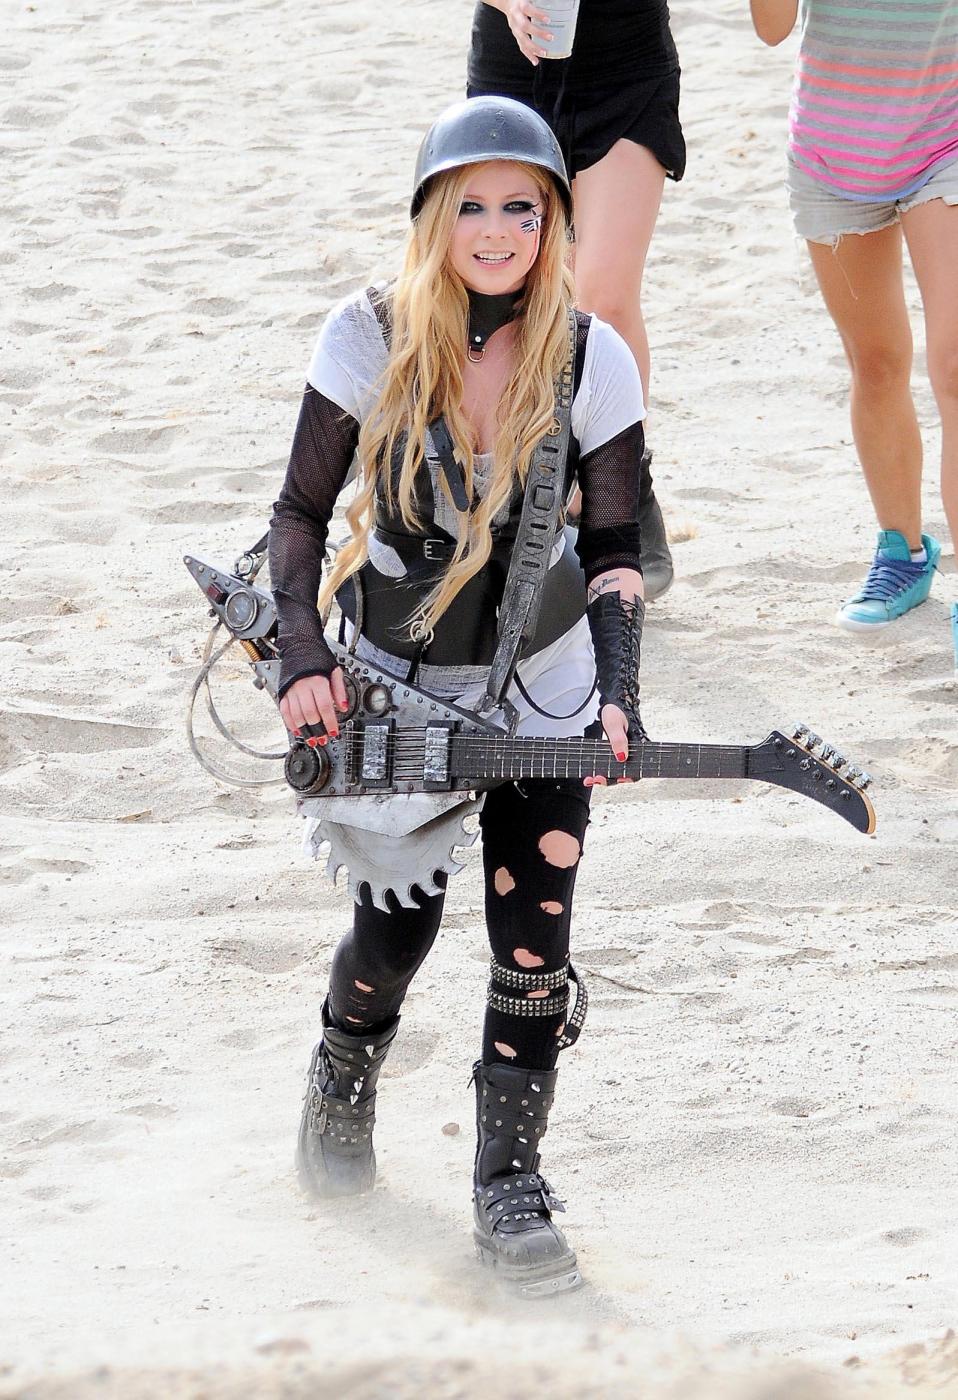 Avril Lavigne soldatessa sexy nel nuovo video "Rock'n Roll"08